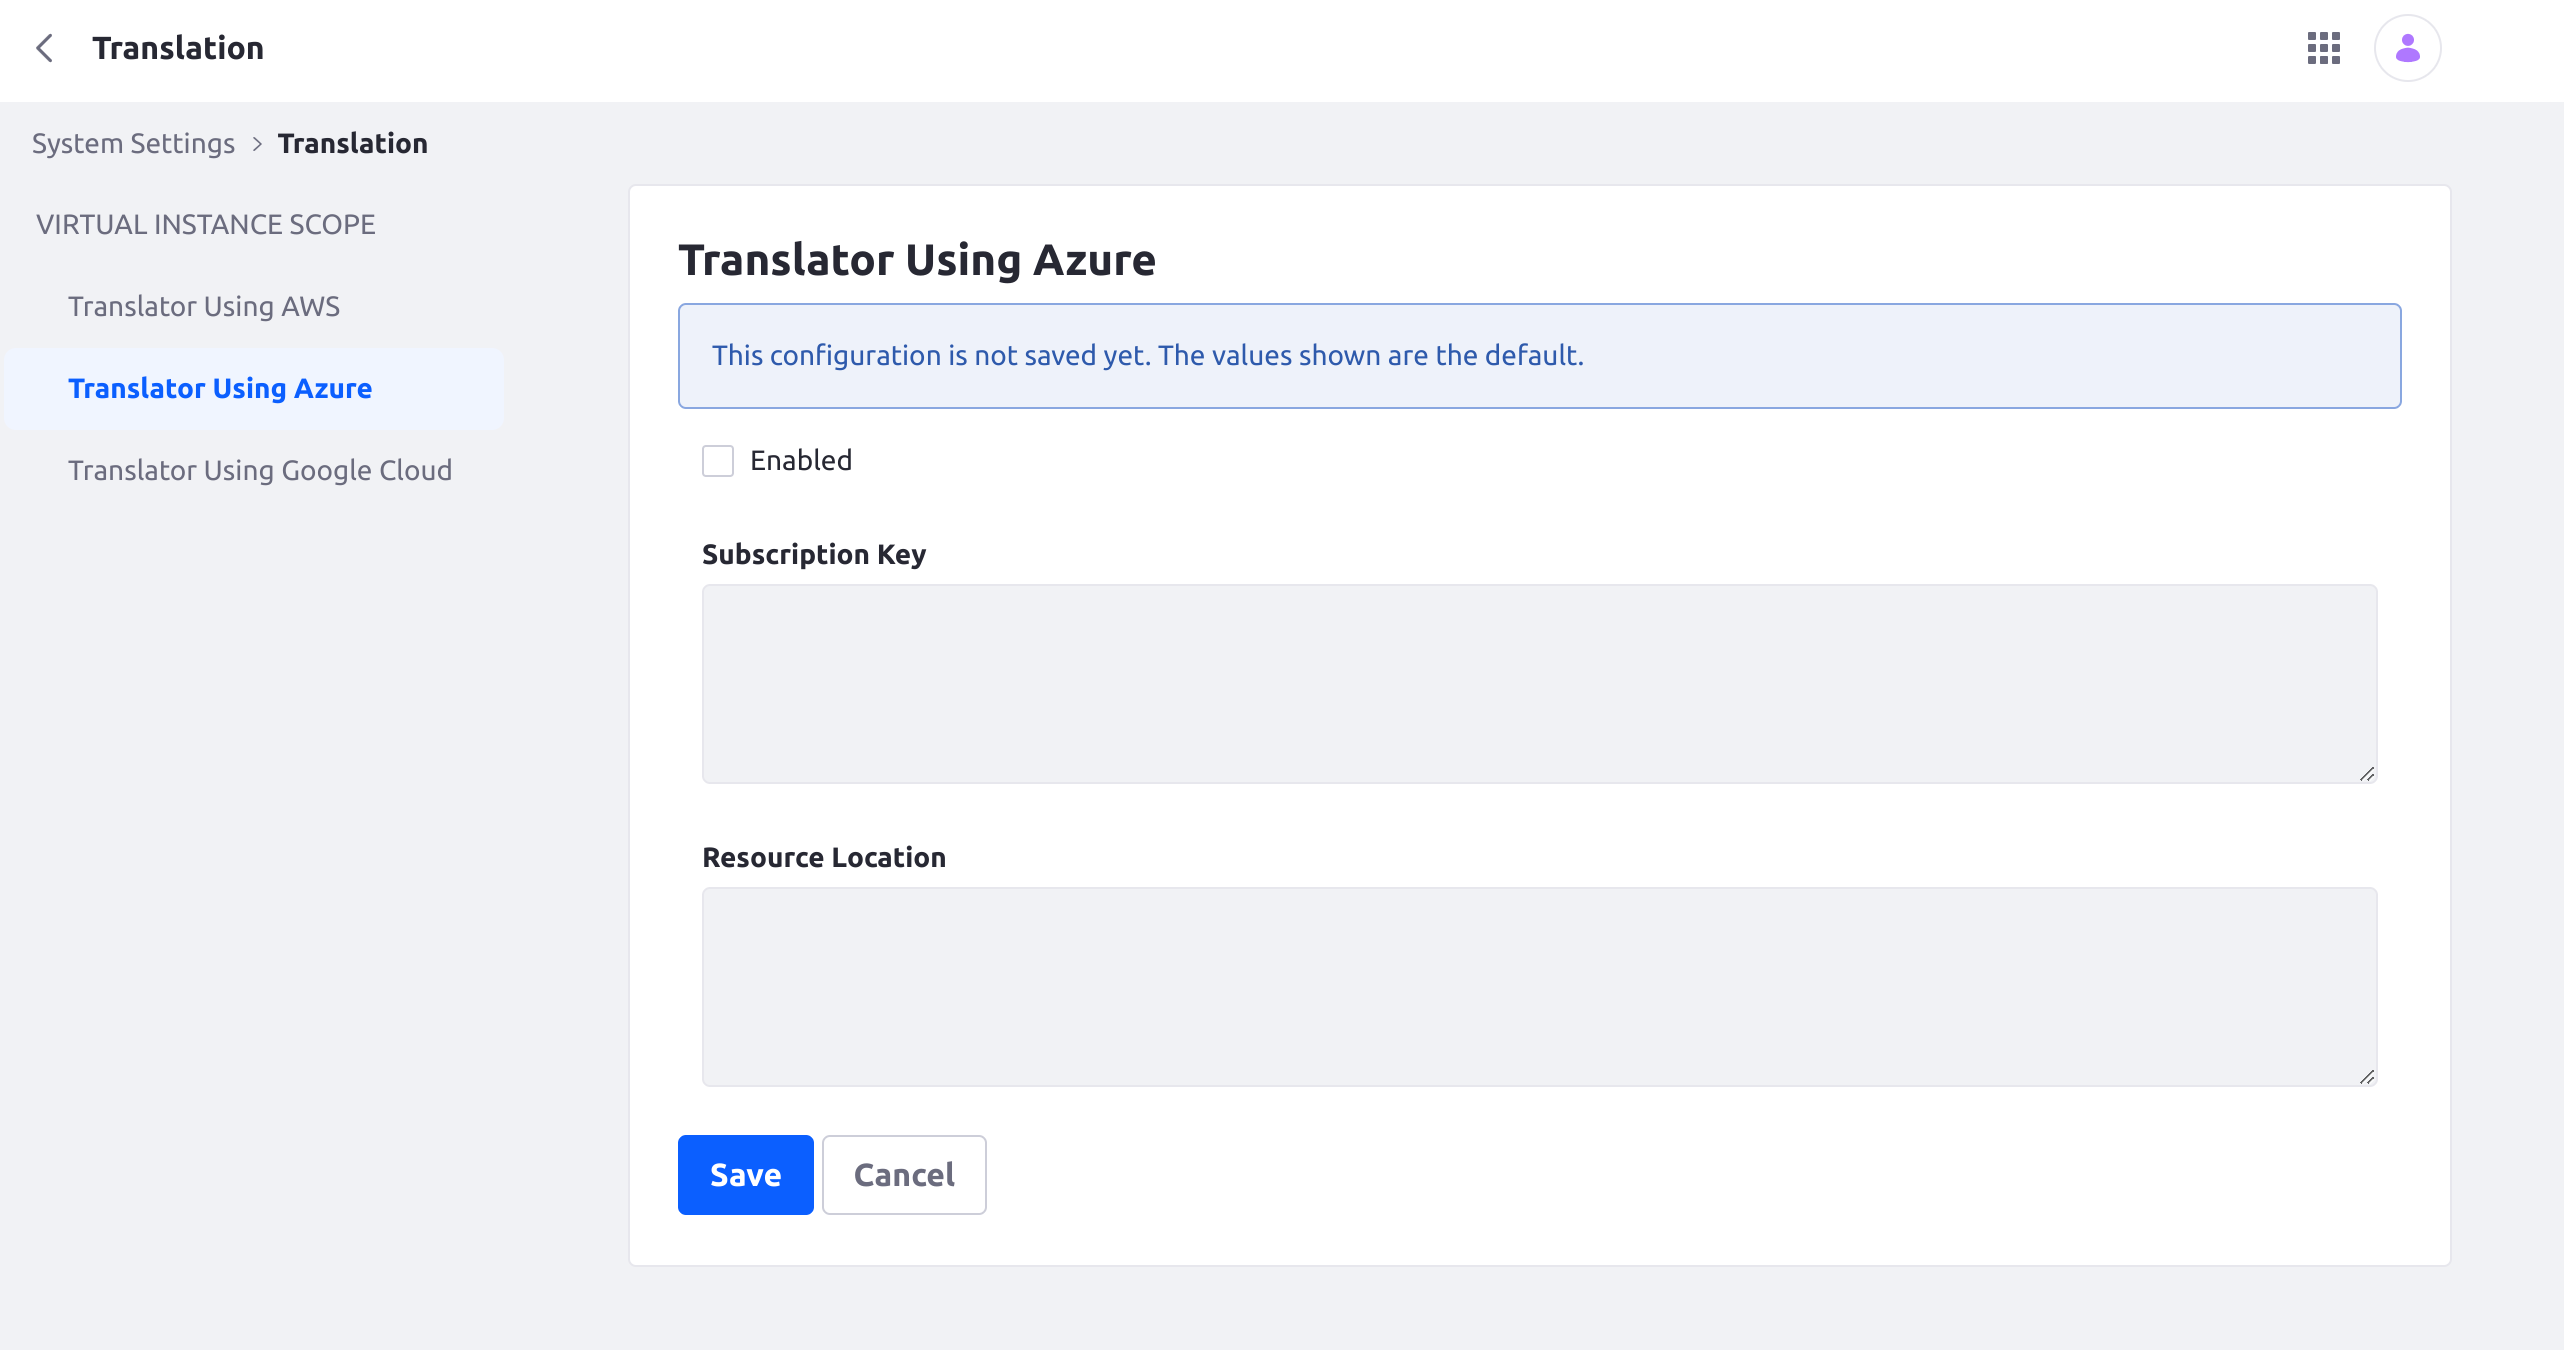 Go to Translator Using Azure.